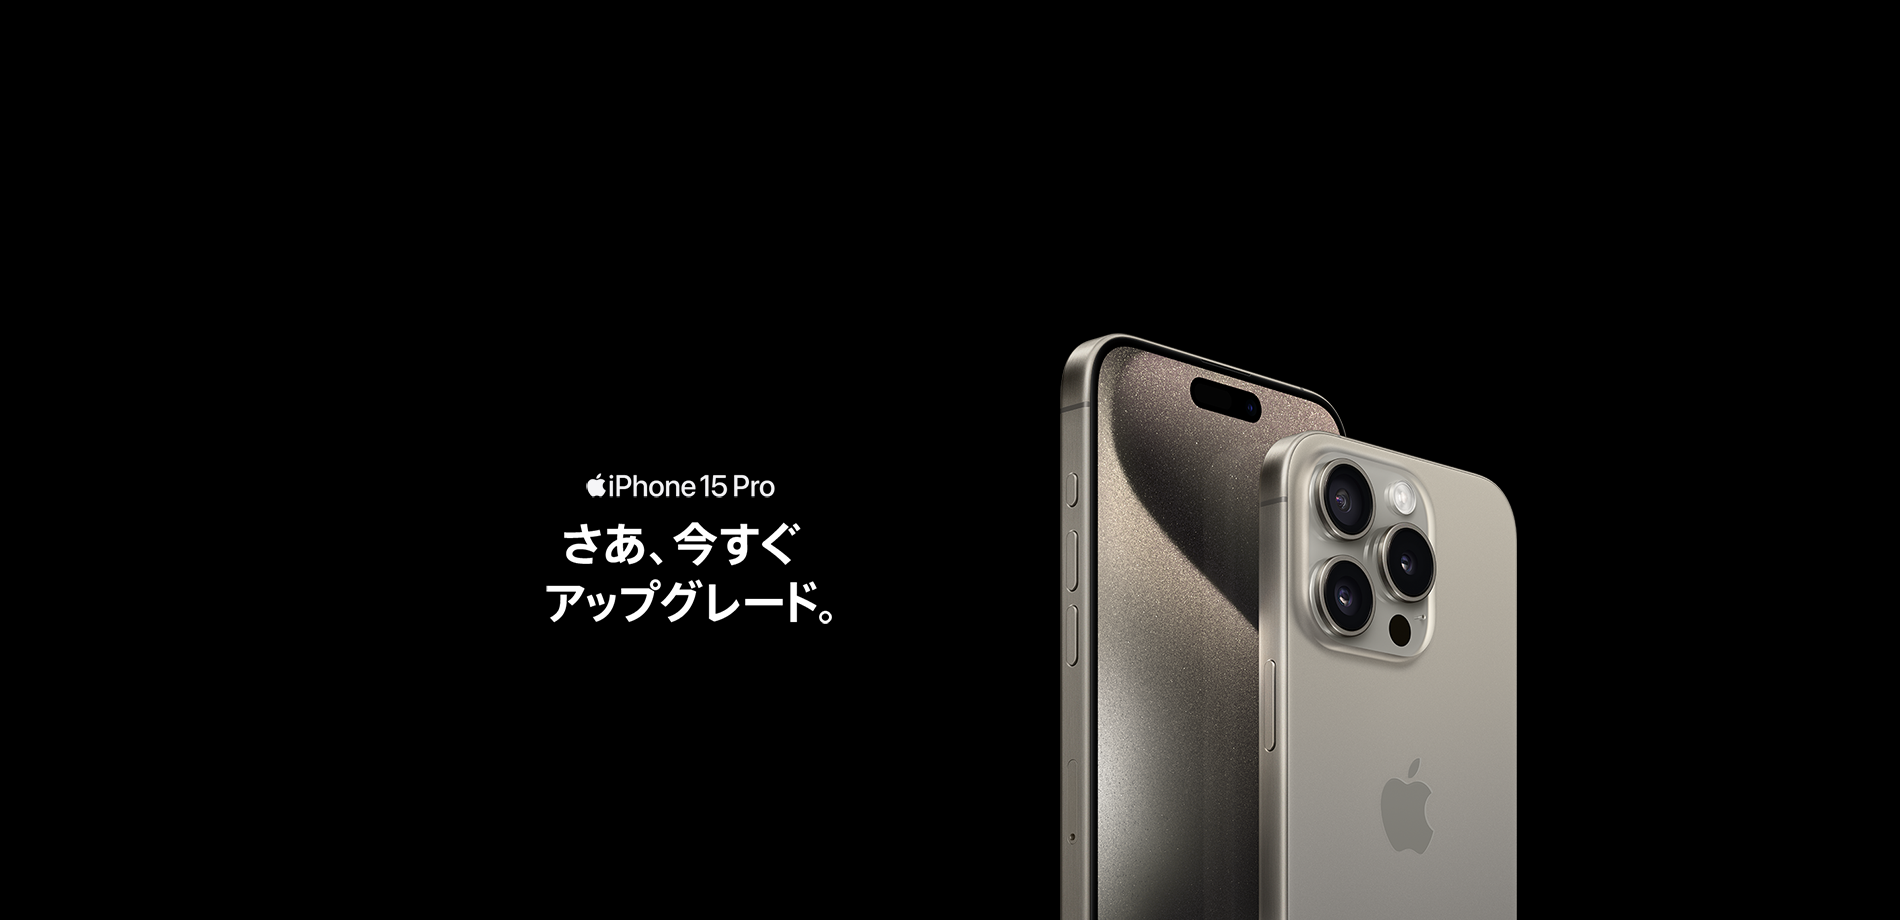 iPhone 15 Pro さあ、今すぐアップグレード。